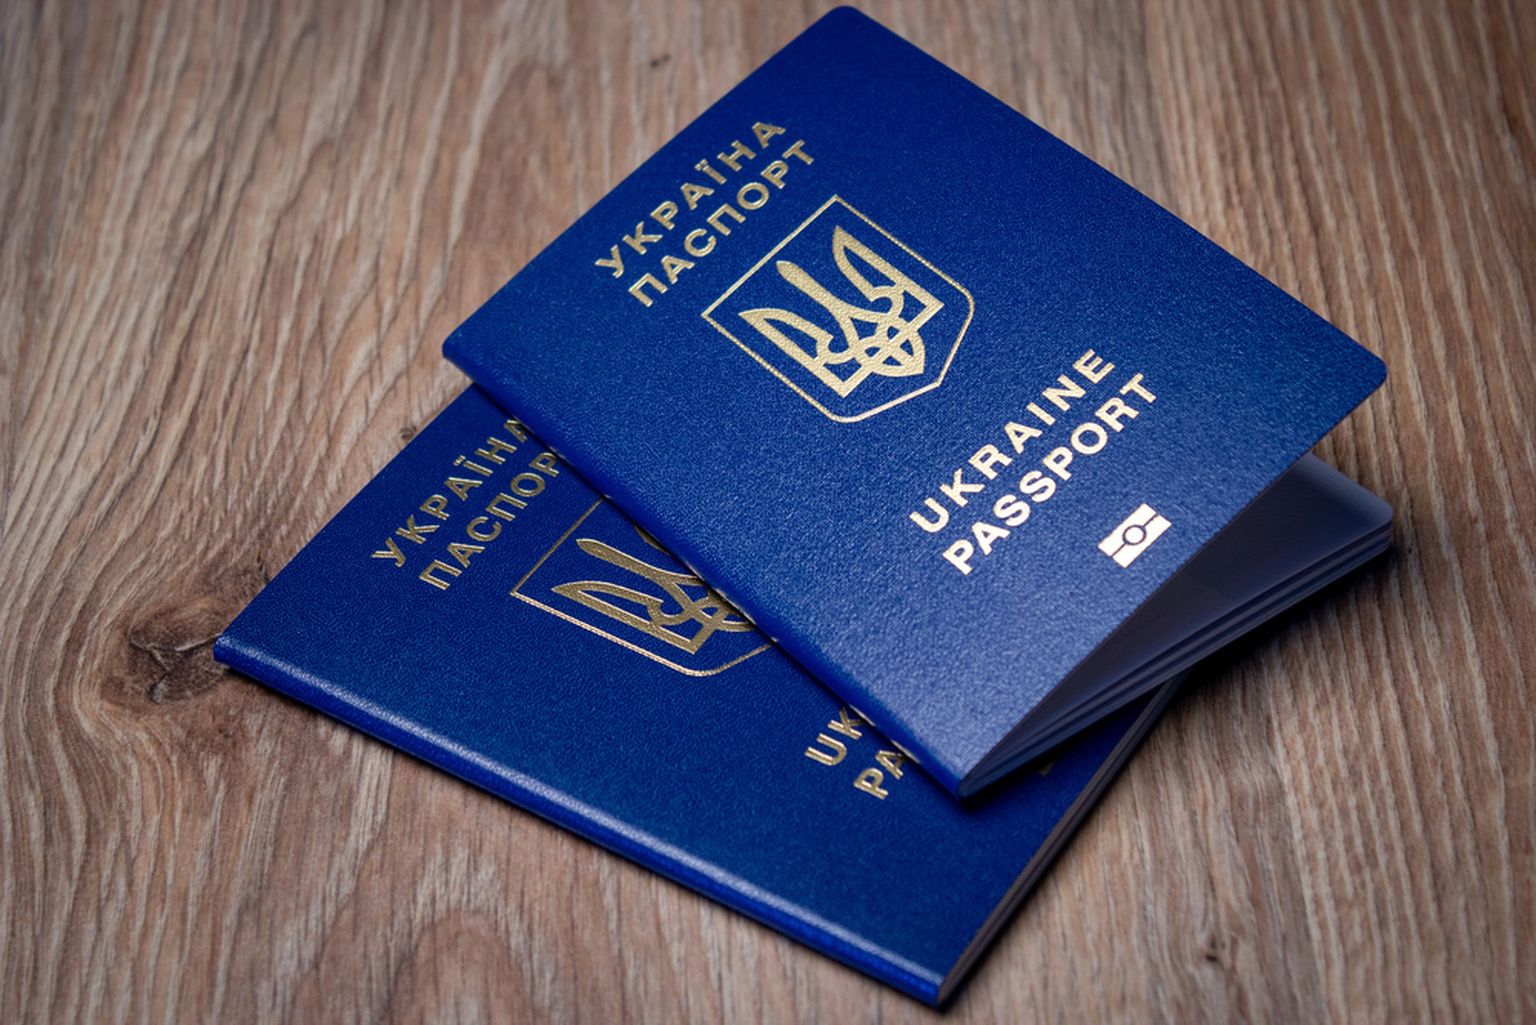 Отсутствие документов усложняет жизнь двум украинским девочкам-беженкам.